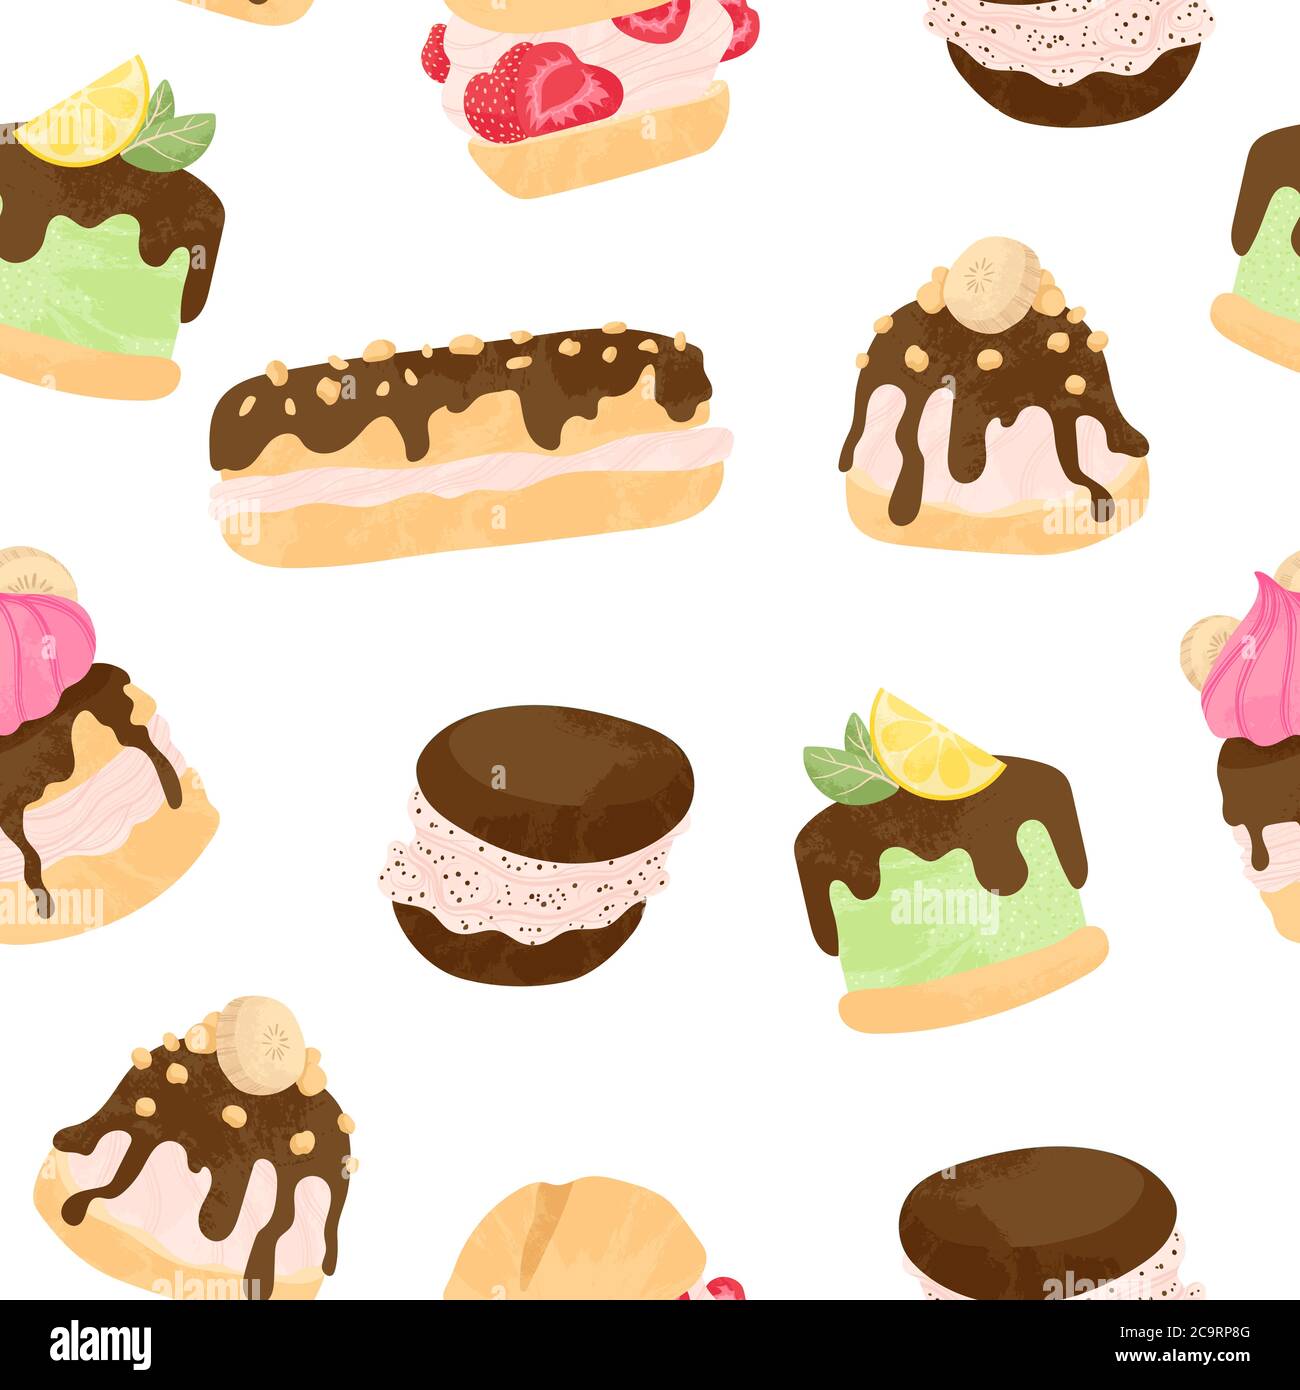 Verschiedene Kuchen, eclair und profiterole Vektor nahtlose Muster in flachen Cartoons Stil. Süßes buntes Dessert mit Schokolade, Beeren und Früchten auf Whit Stock Vektor